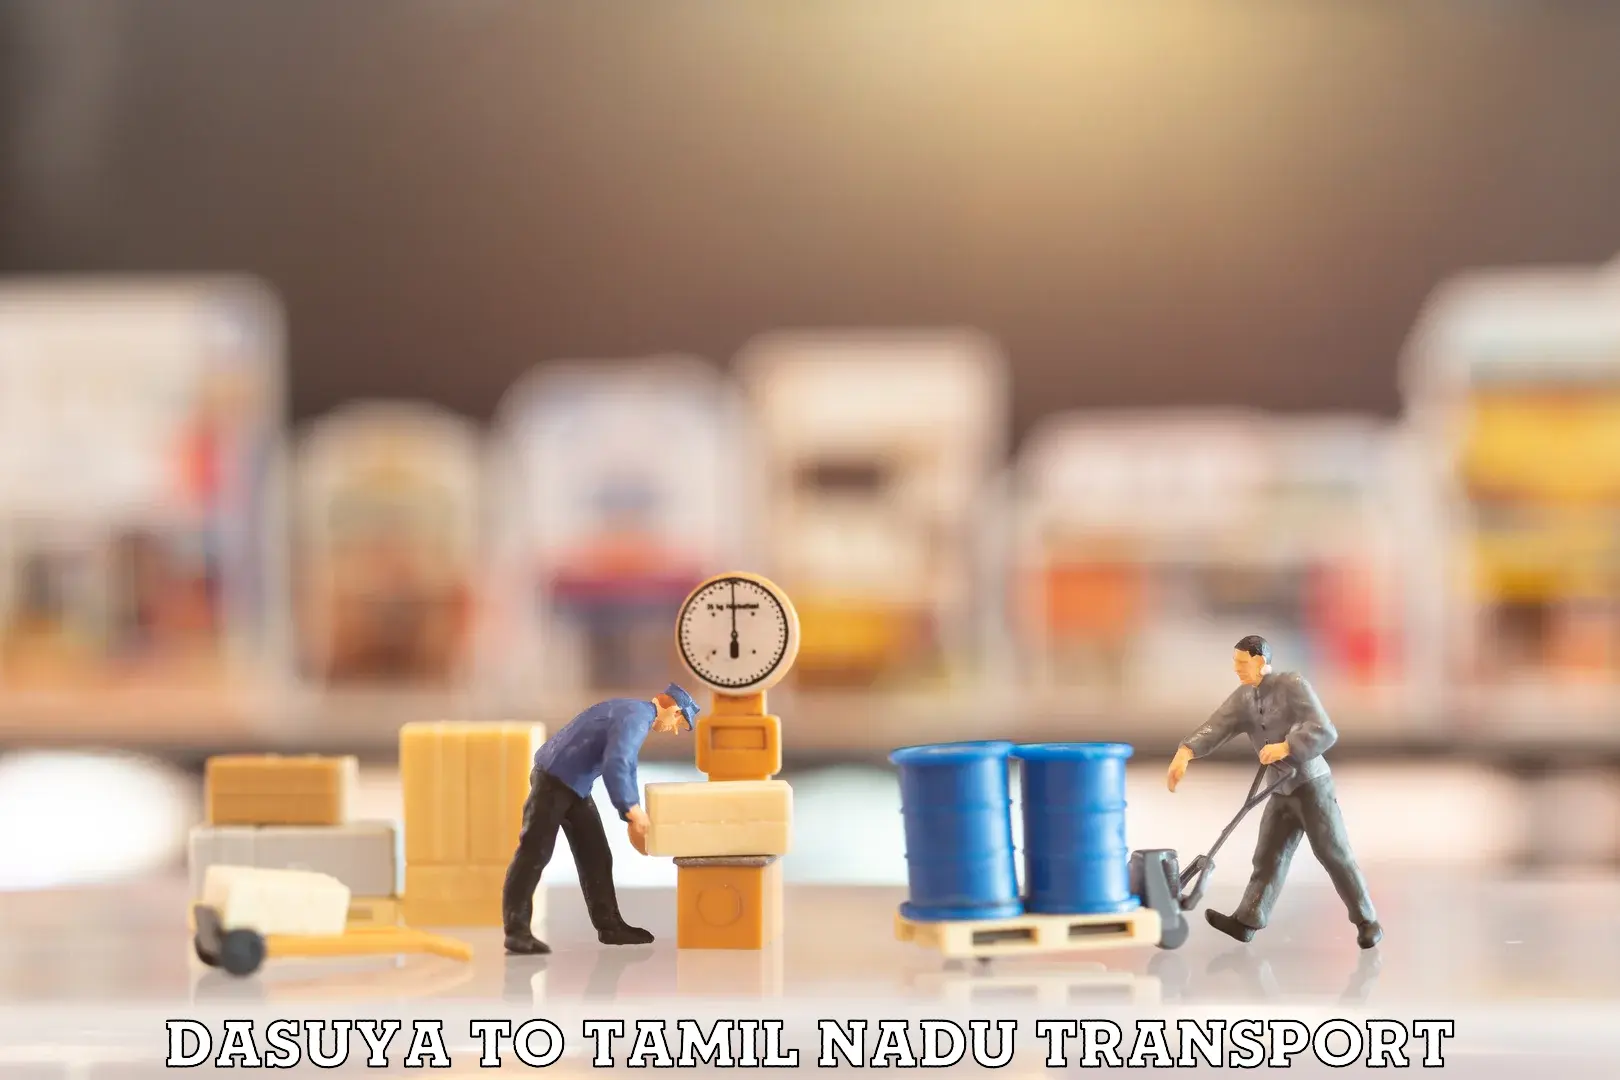 Interstate transport services Dasuya to Tamil Nadu